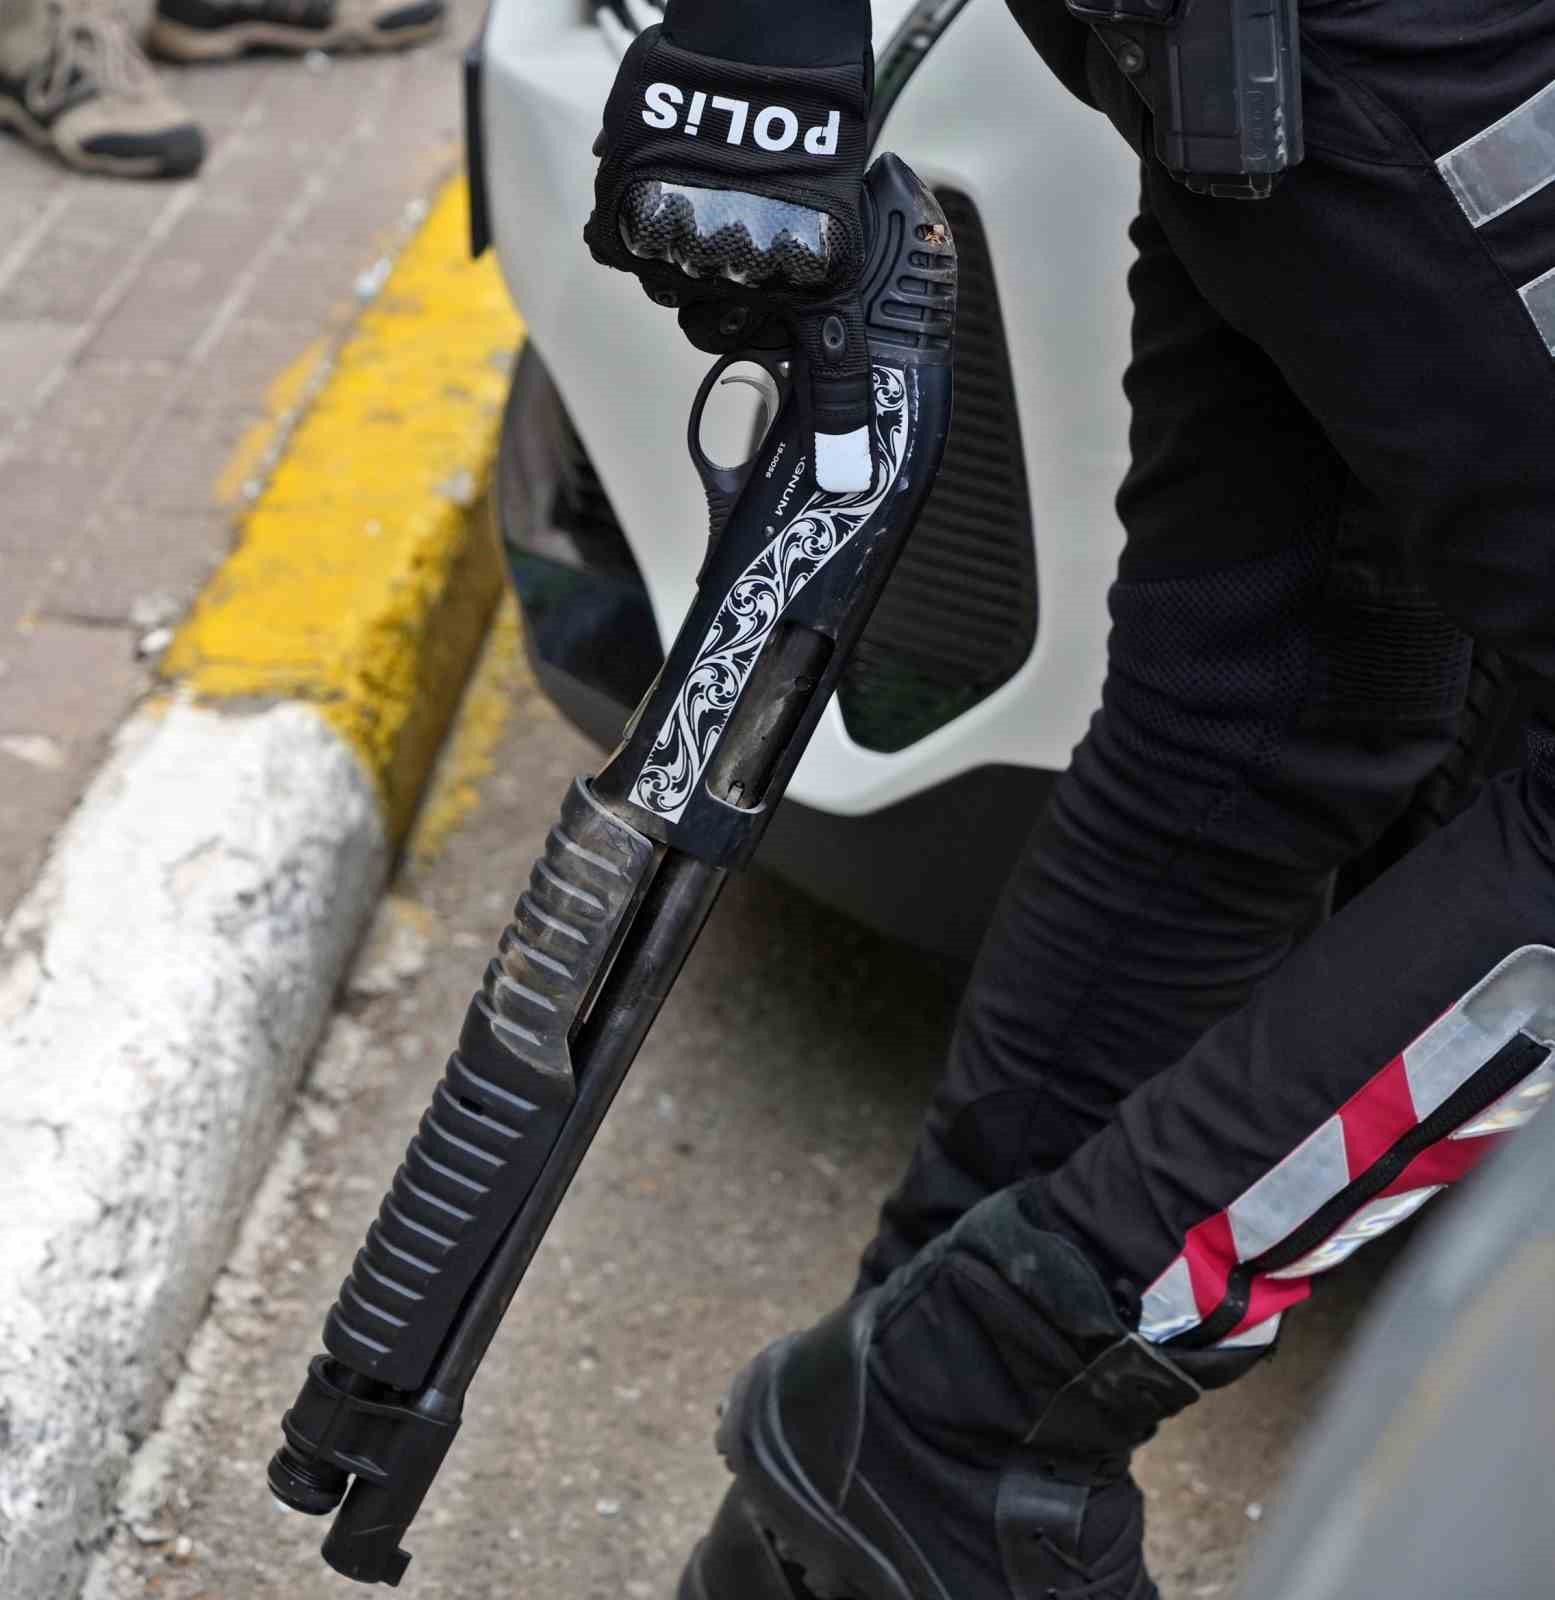 Antalya’da silahların konuştuğu kavgada yaralı ve gözaltı sayısı arttı: 14 yaralı, 18 gözaltı
